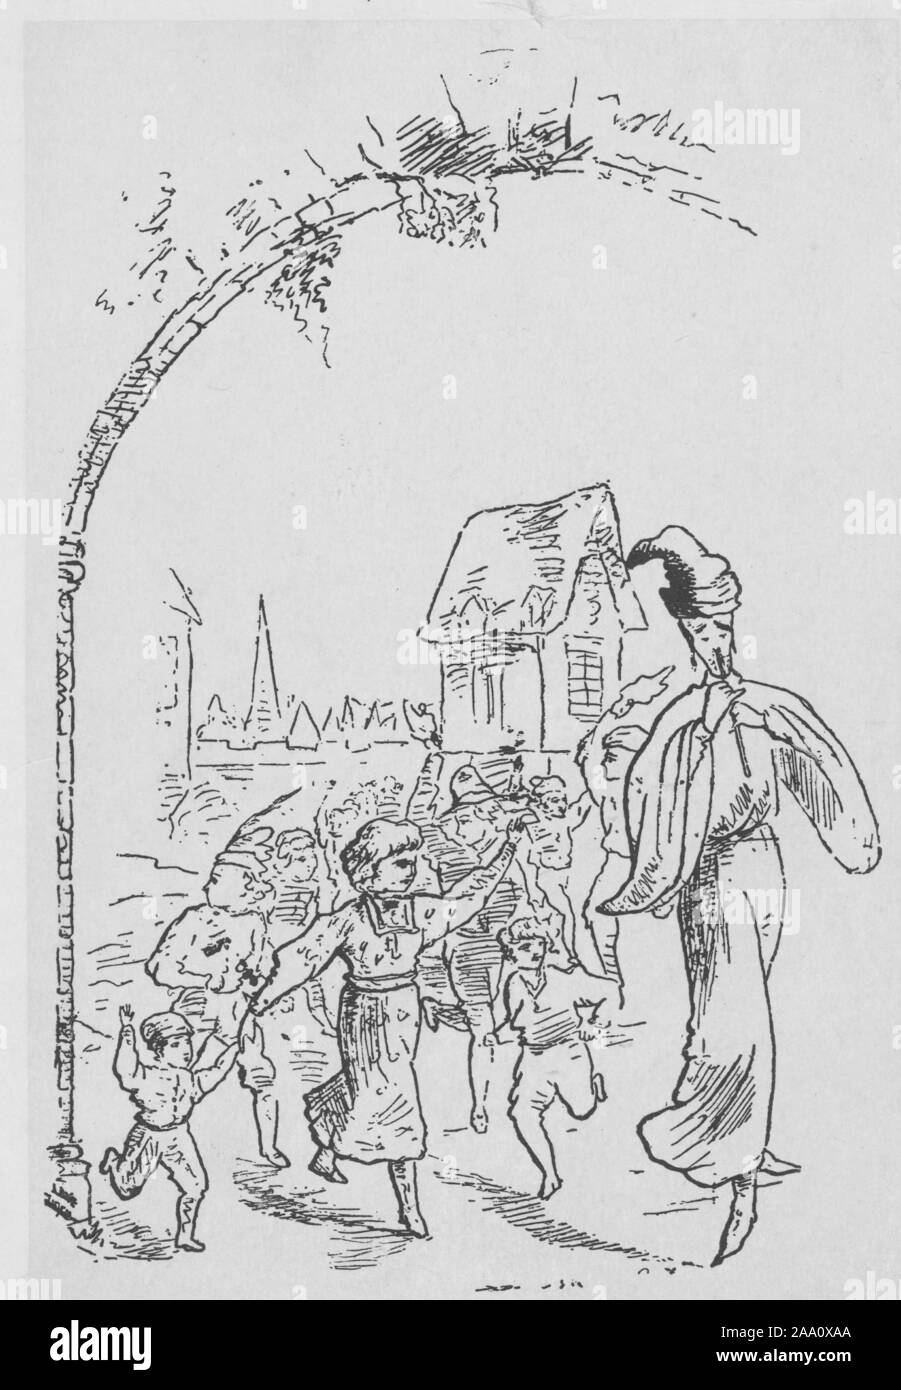 Dessin monochrome d'une scène de l'histoire "Le joueur de flûte de Hamelin" par le poète Robert Browning, avec les Violons jouant de sa flûte et menant les enfants hors de la ville, par l'artiste Aubrey Beardsley, 1888. À partir de la Bibliothèque publique de New York. () Banque D'Images